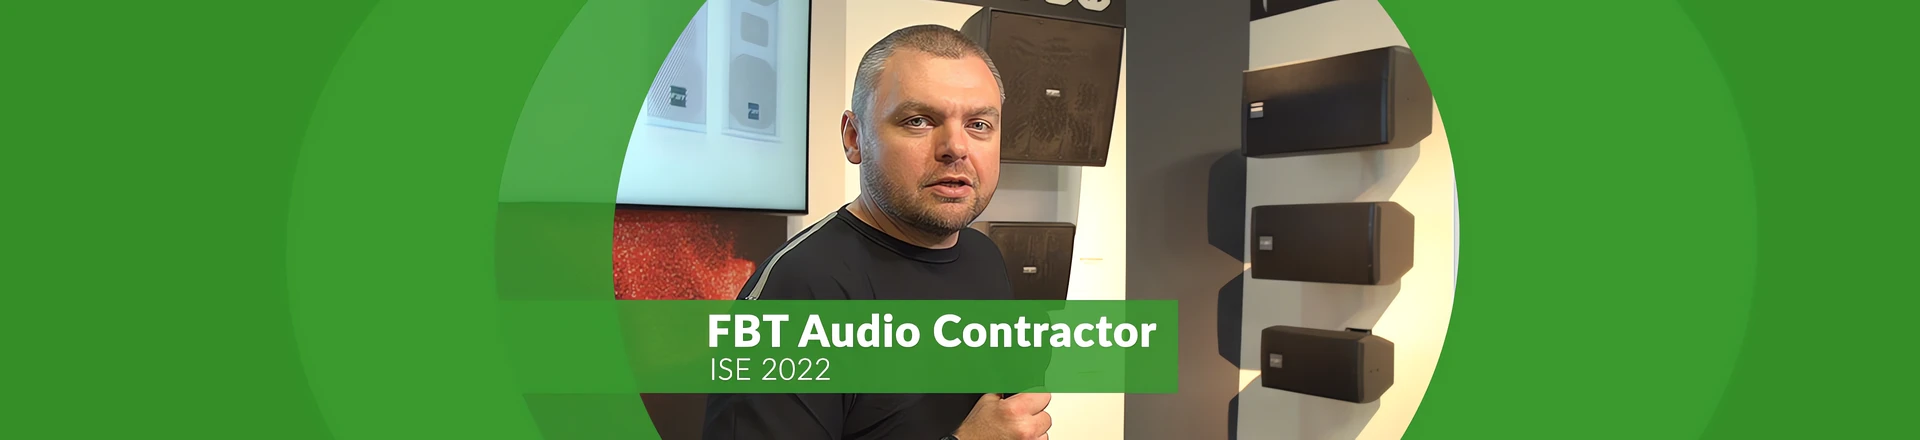 FBT Audio Contractor - sprzęt instalacyjny na ISE 2022